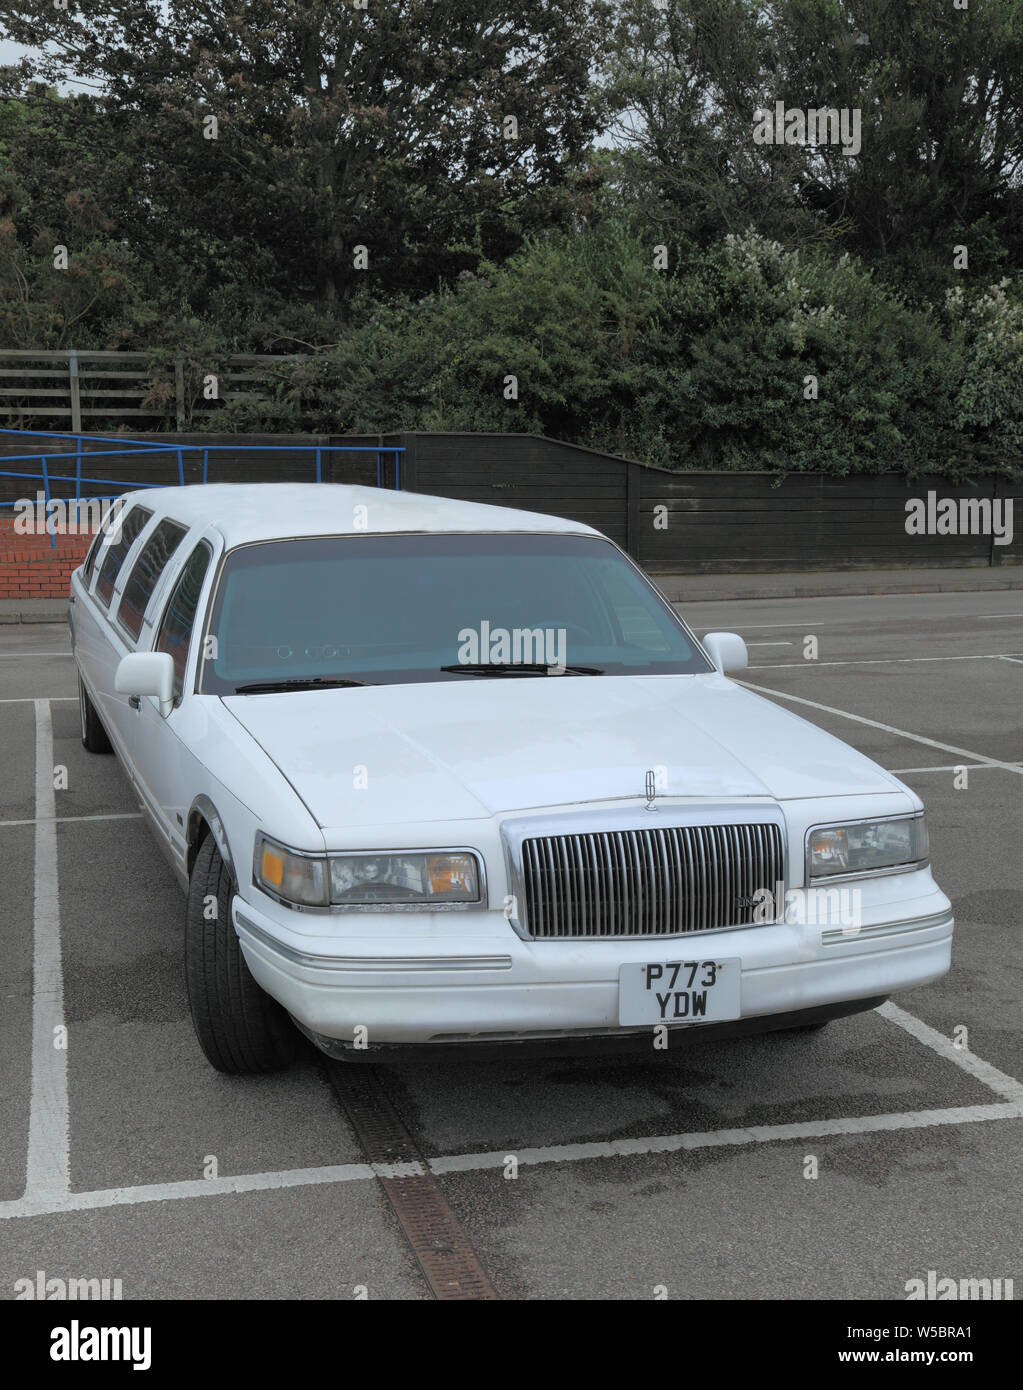 Una limusina, limo, Lincoln fabricación, coche, vehículo, teniendo 2 bahías, bahías de estacionamiento Foto de stock